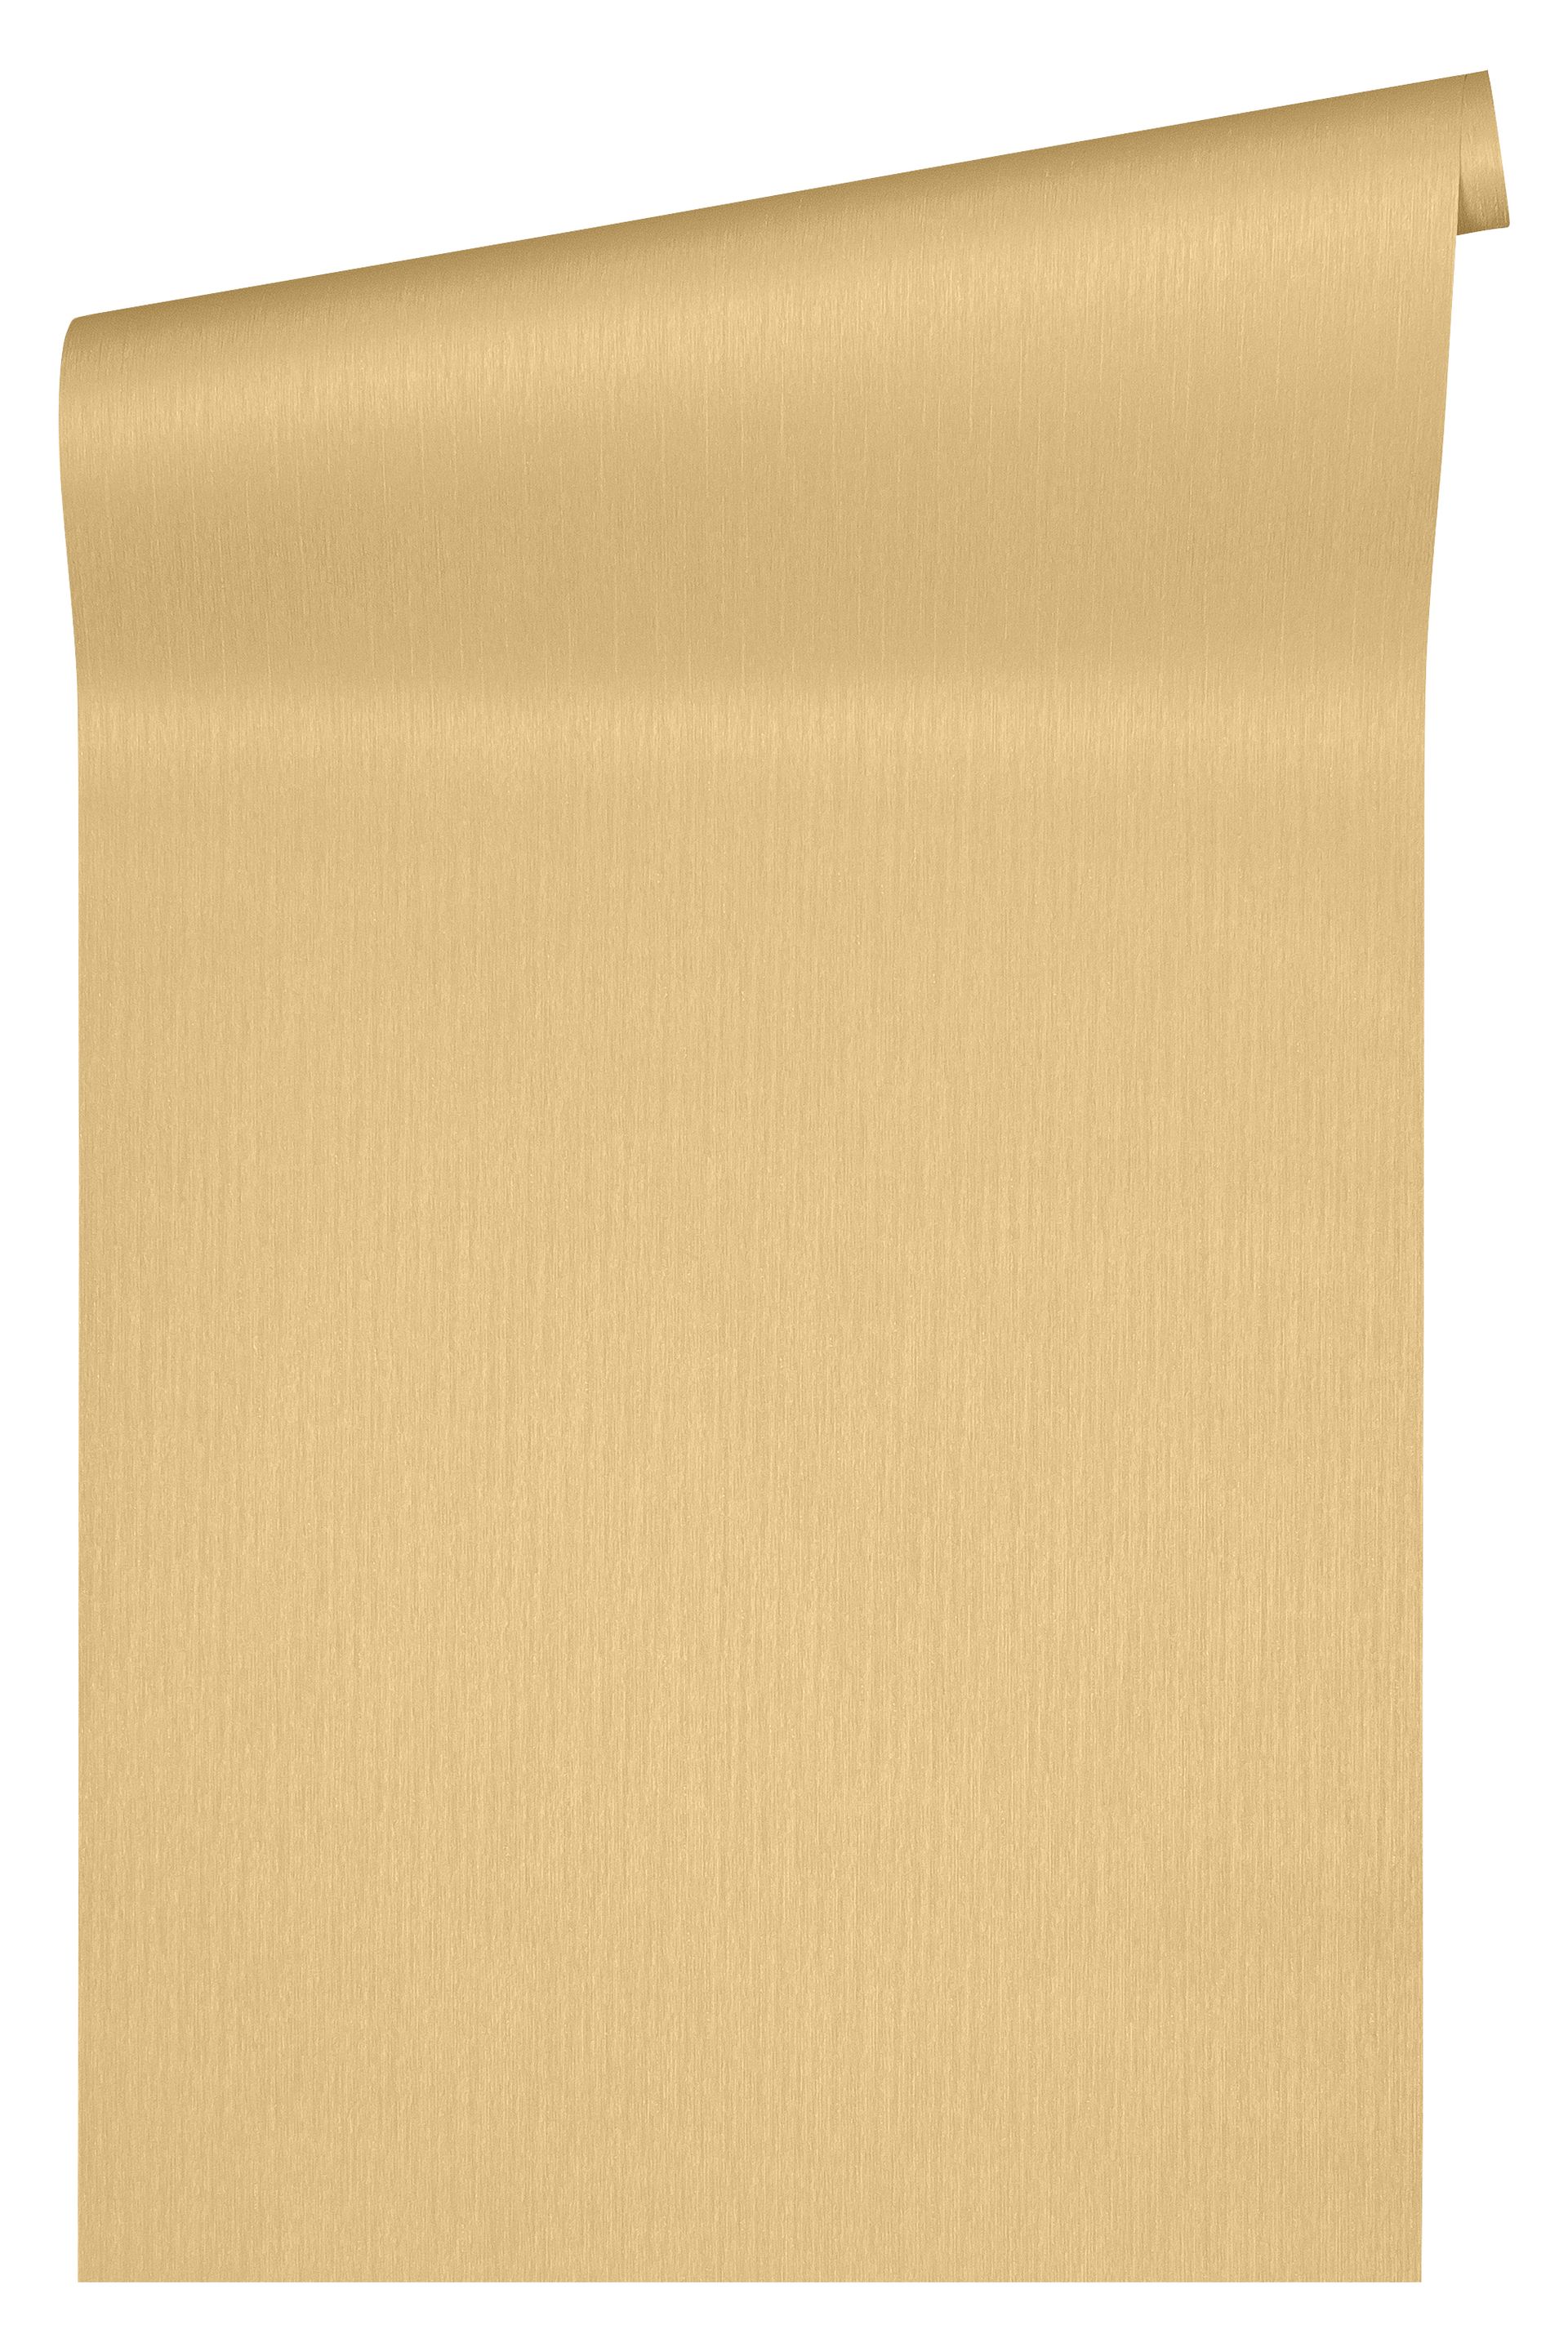 Versace wallpaper Versace 3, Design Tapete, beige 343275